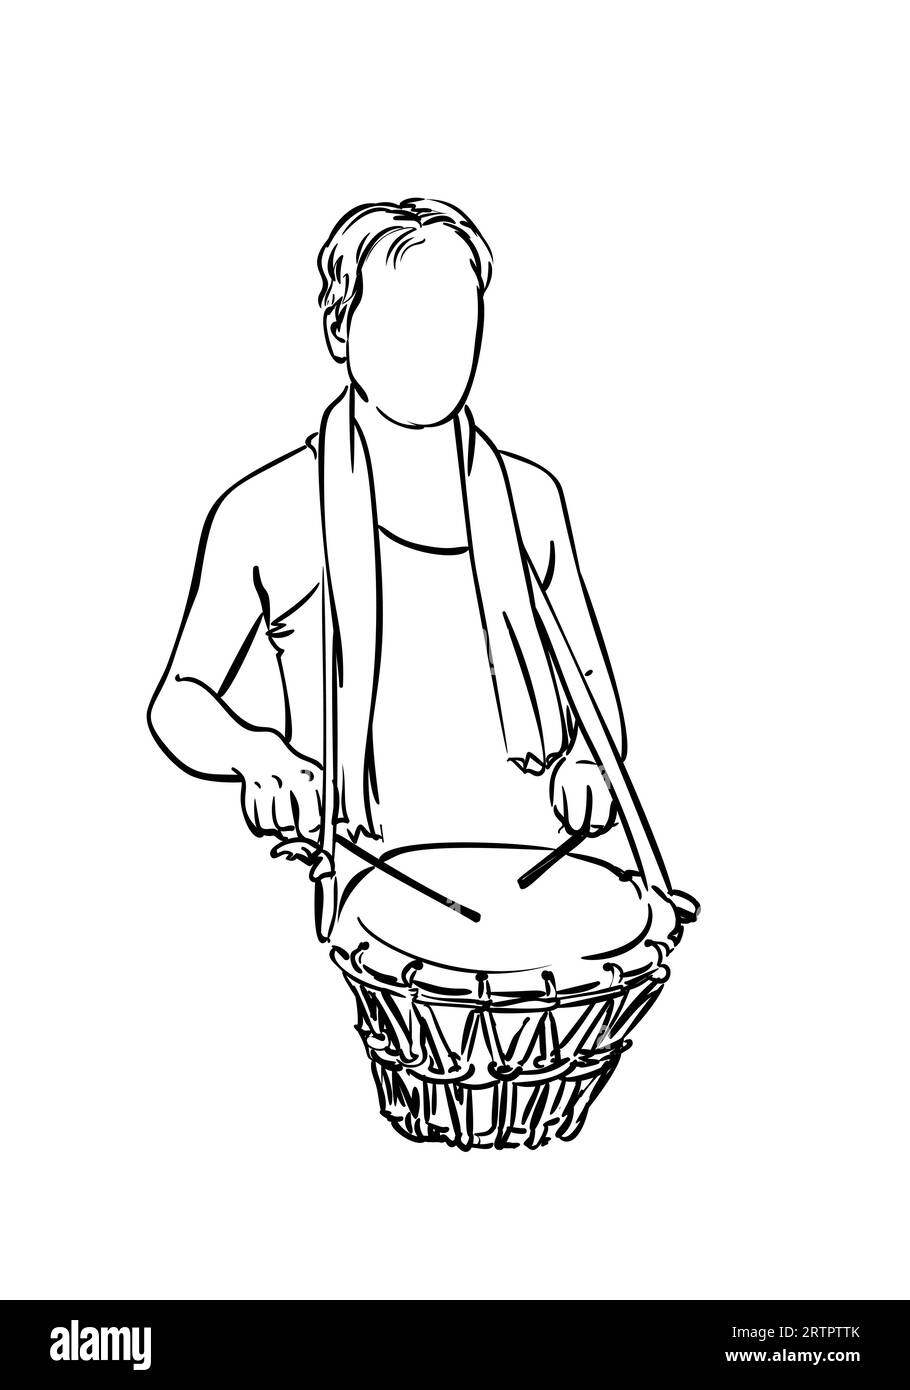 Homme tambourinant le tambour, dessin d'une personne sans visage jouant un instrument de musique à percussion, haut du corps isolé, dessin linéaire simple vecteur, dessiné à la main Illustration de Vecteur